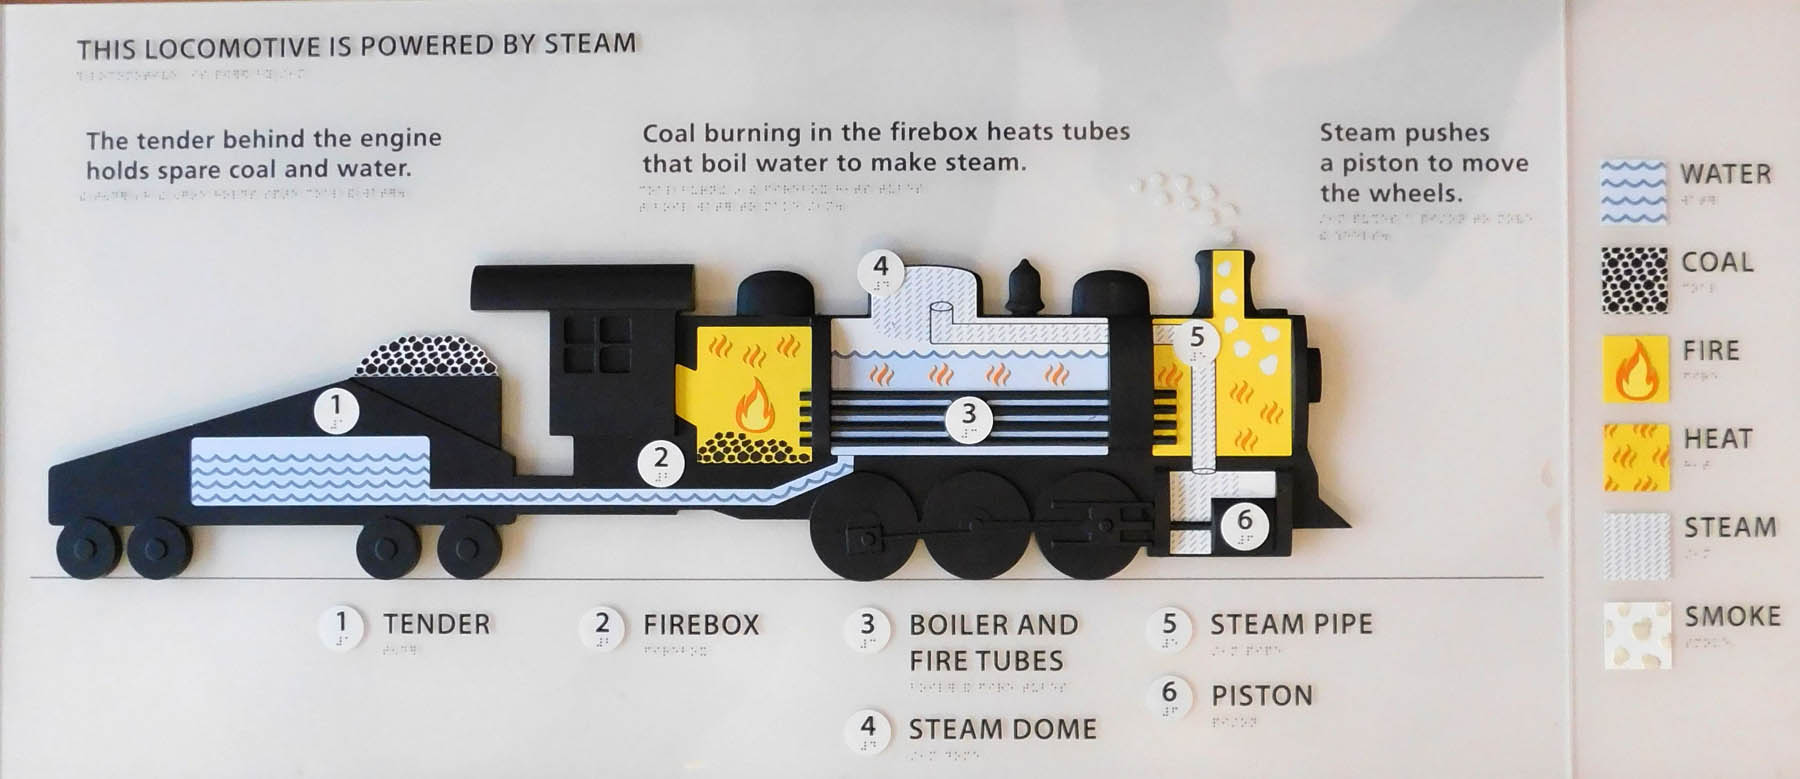 Locomotive making steam